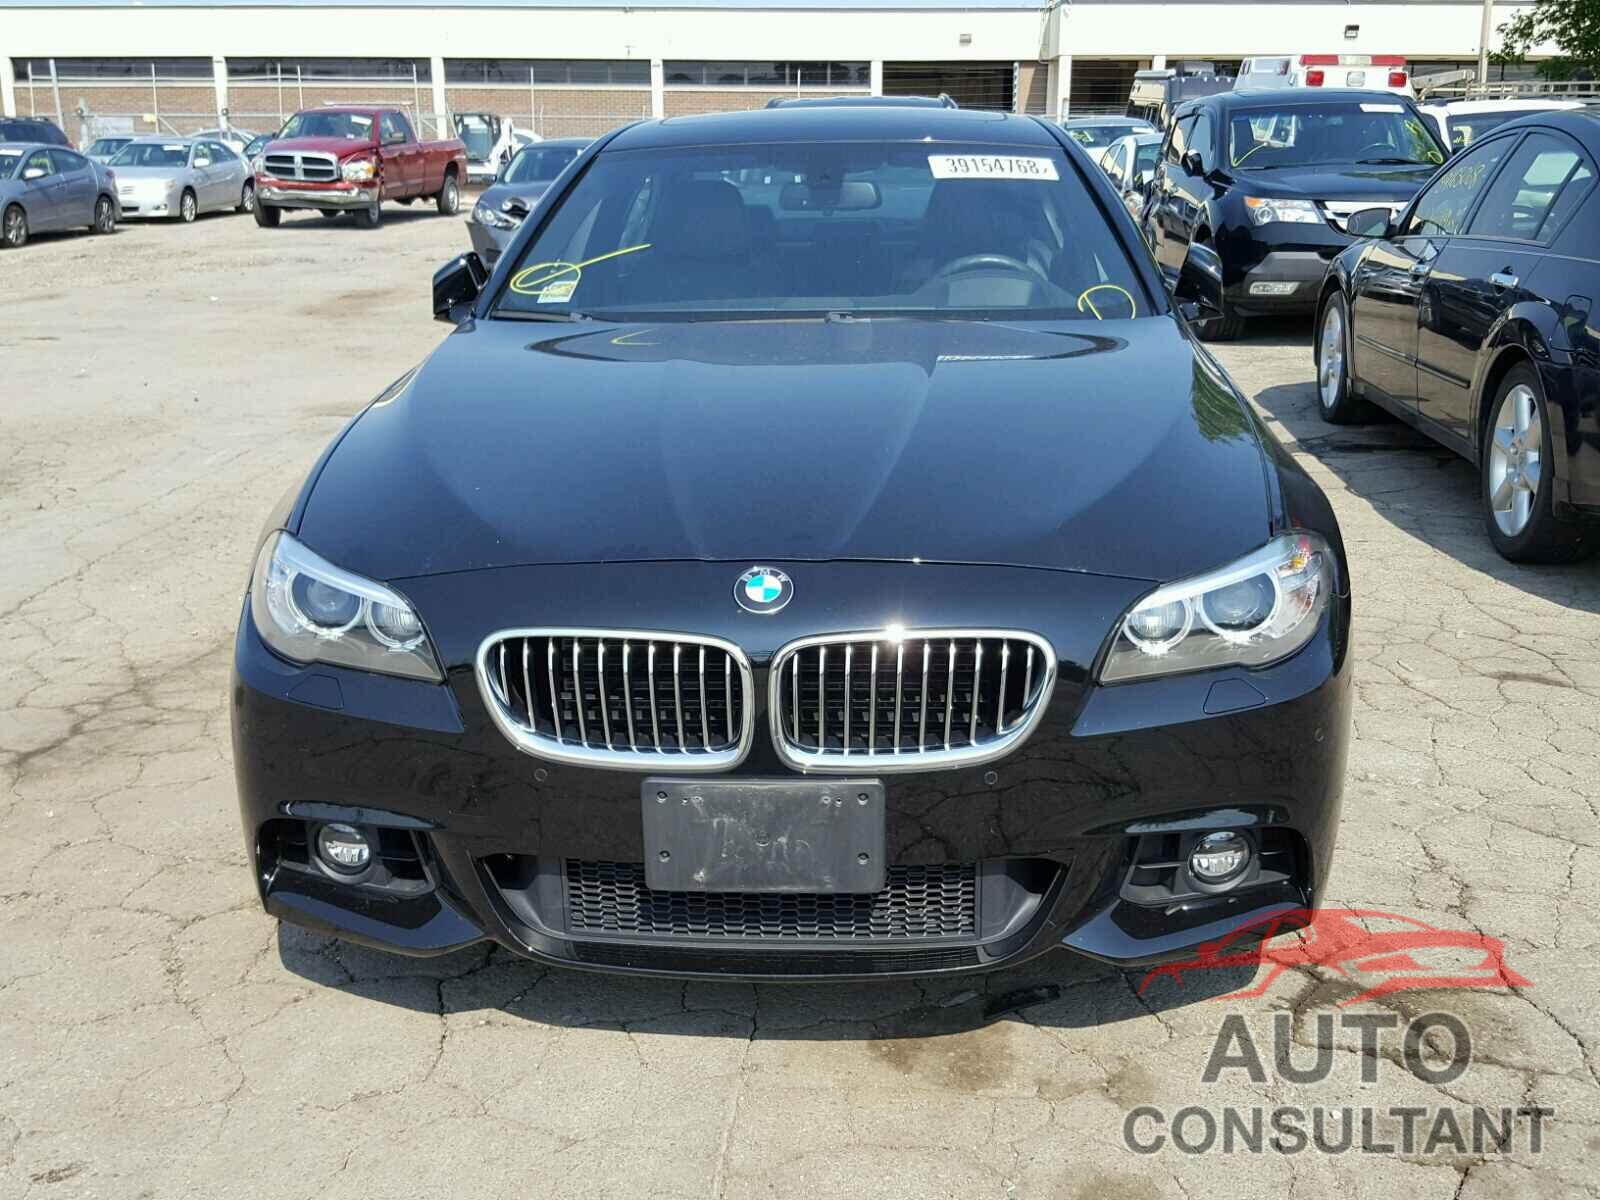 BMW 535 XI 2015 - WBA5B3C56FD548320